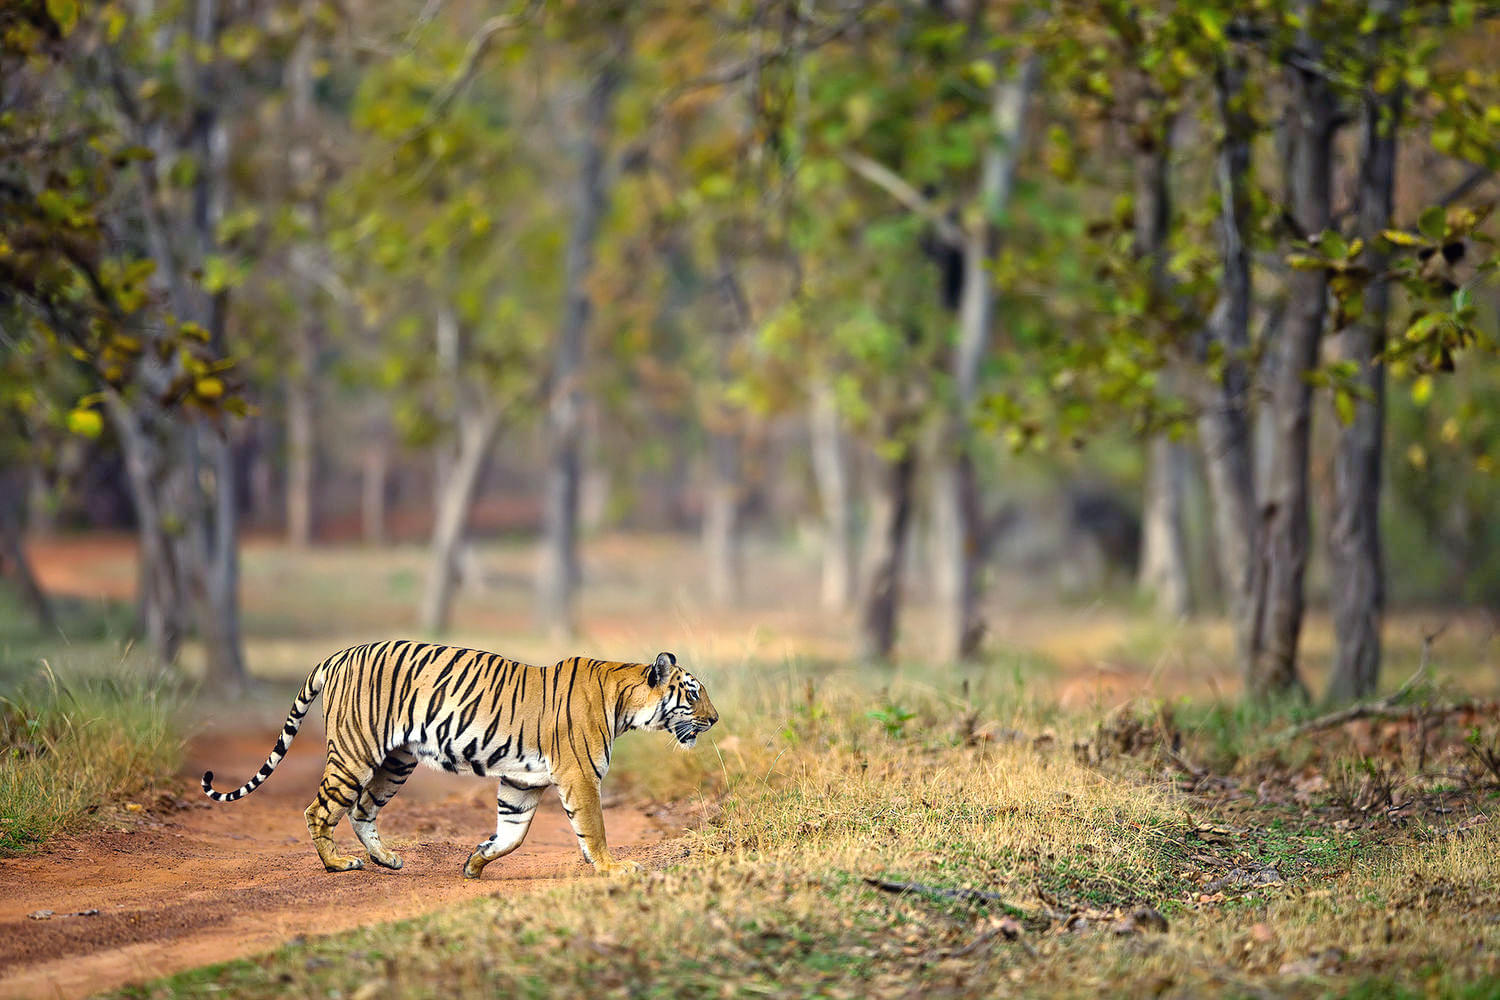 Bhadra Wildlife Sanctuary Overview